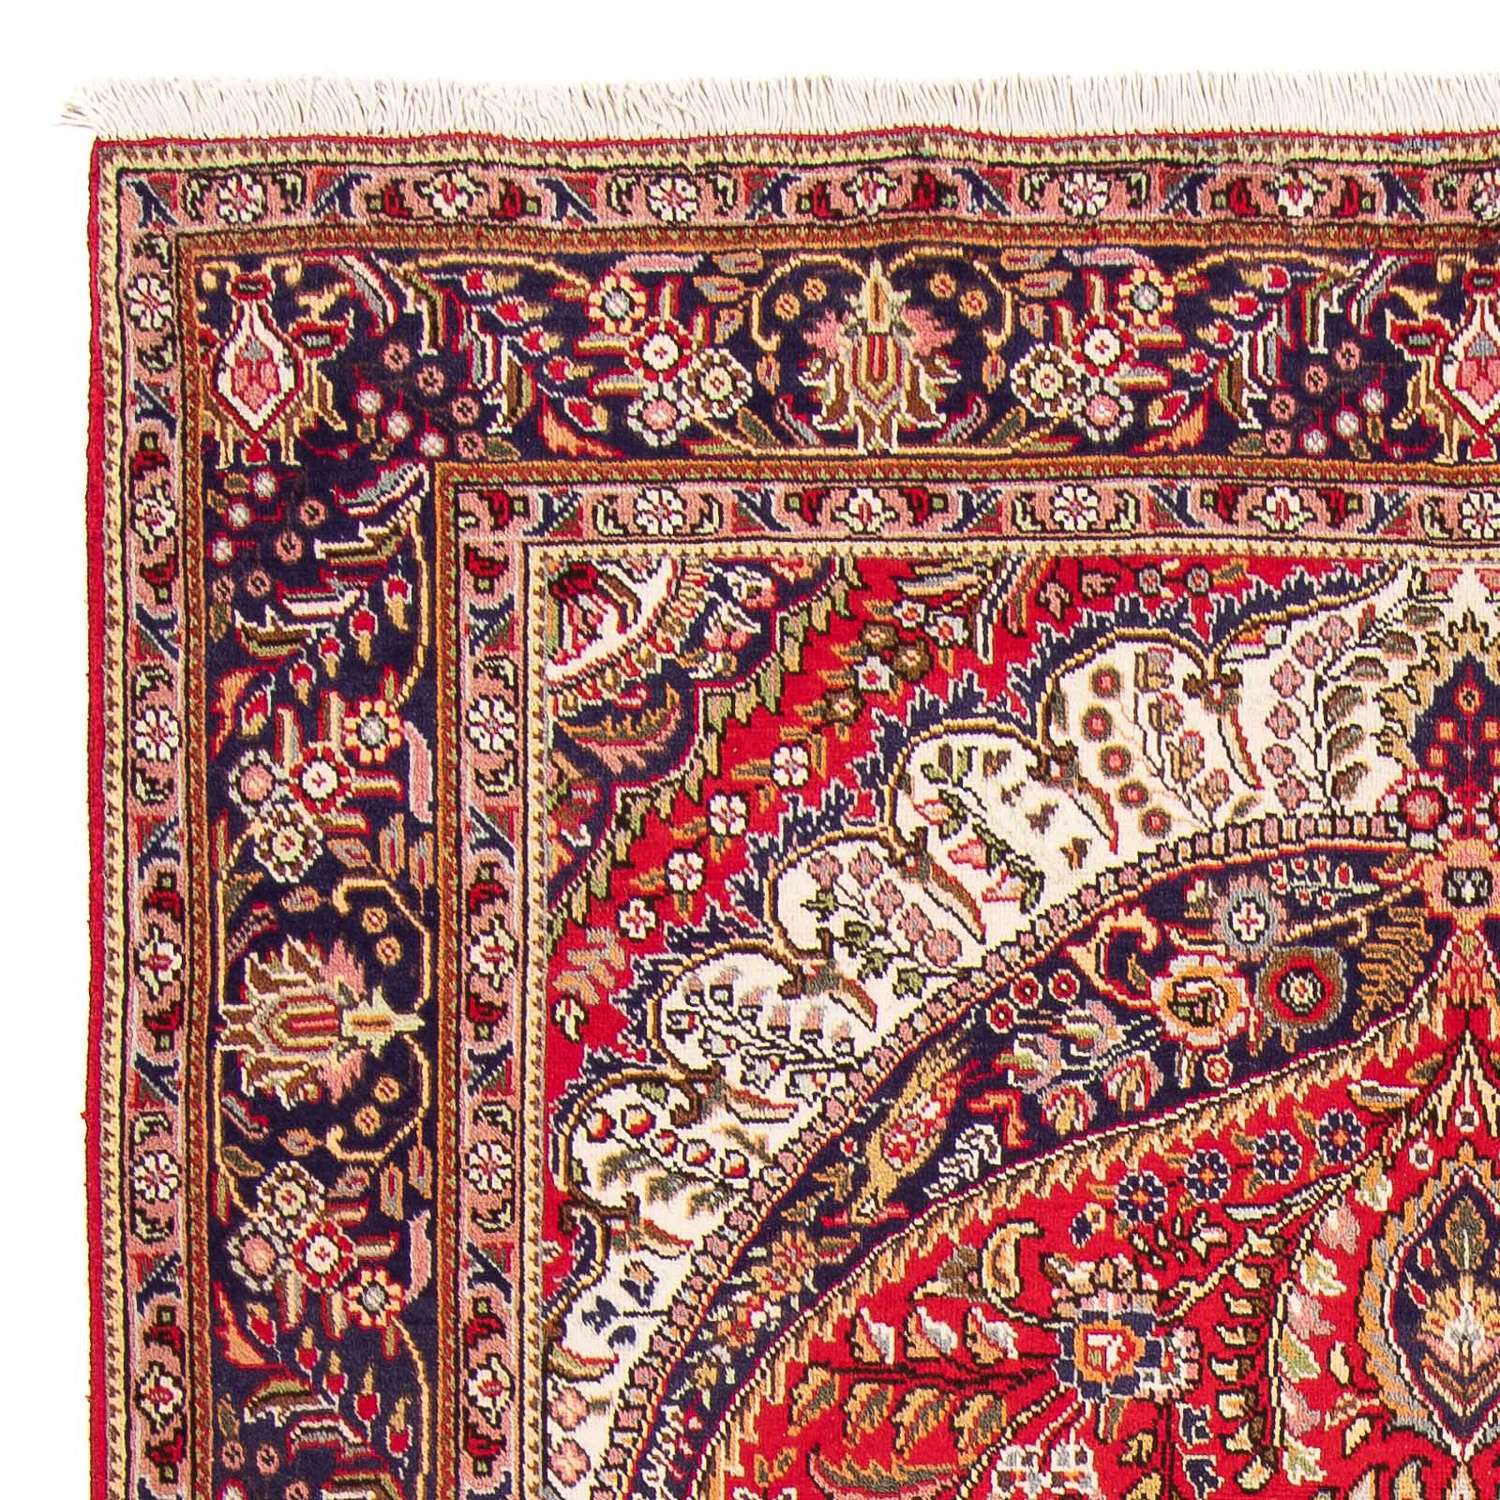 Perský koberec - Tabríz - 300 x 205 cm - červená